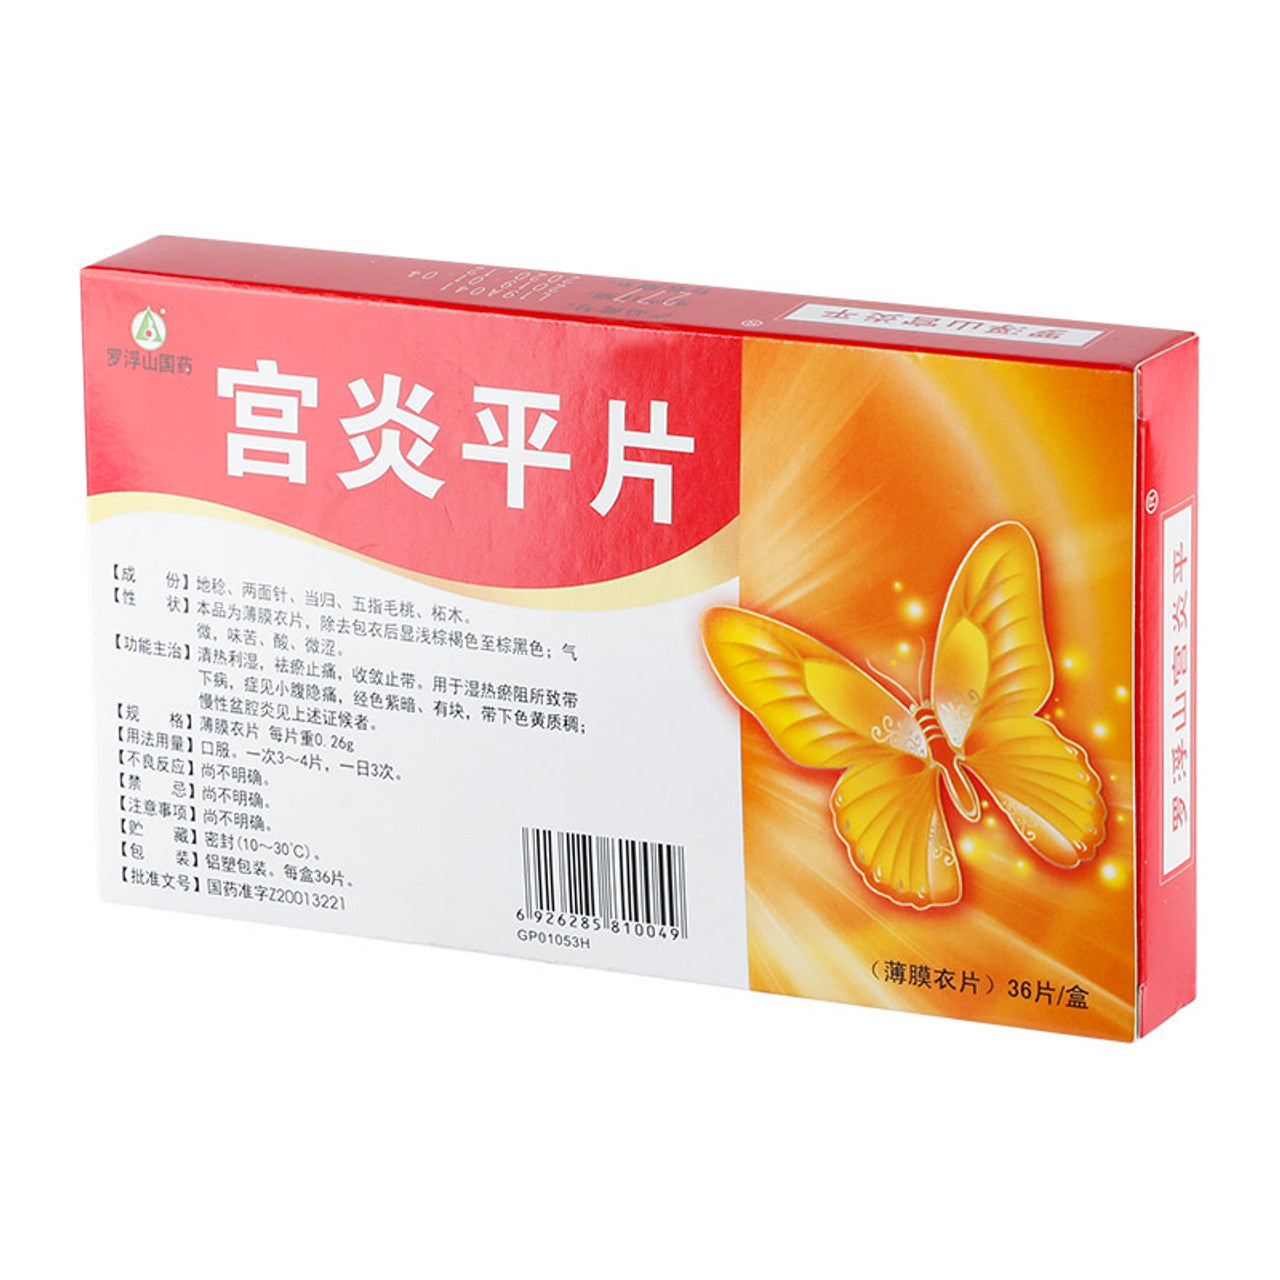 China Herb. Gongyanping Tablets or Gongyanping Pian for chronic pelvic inflammation. Gong Yan Ping Pian